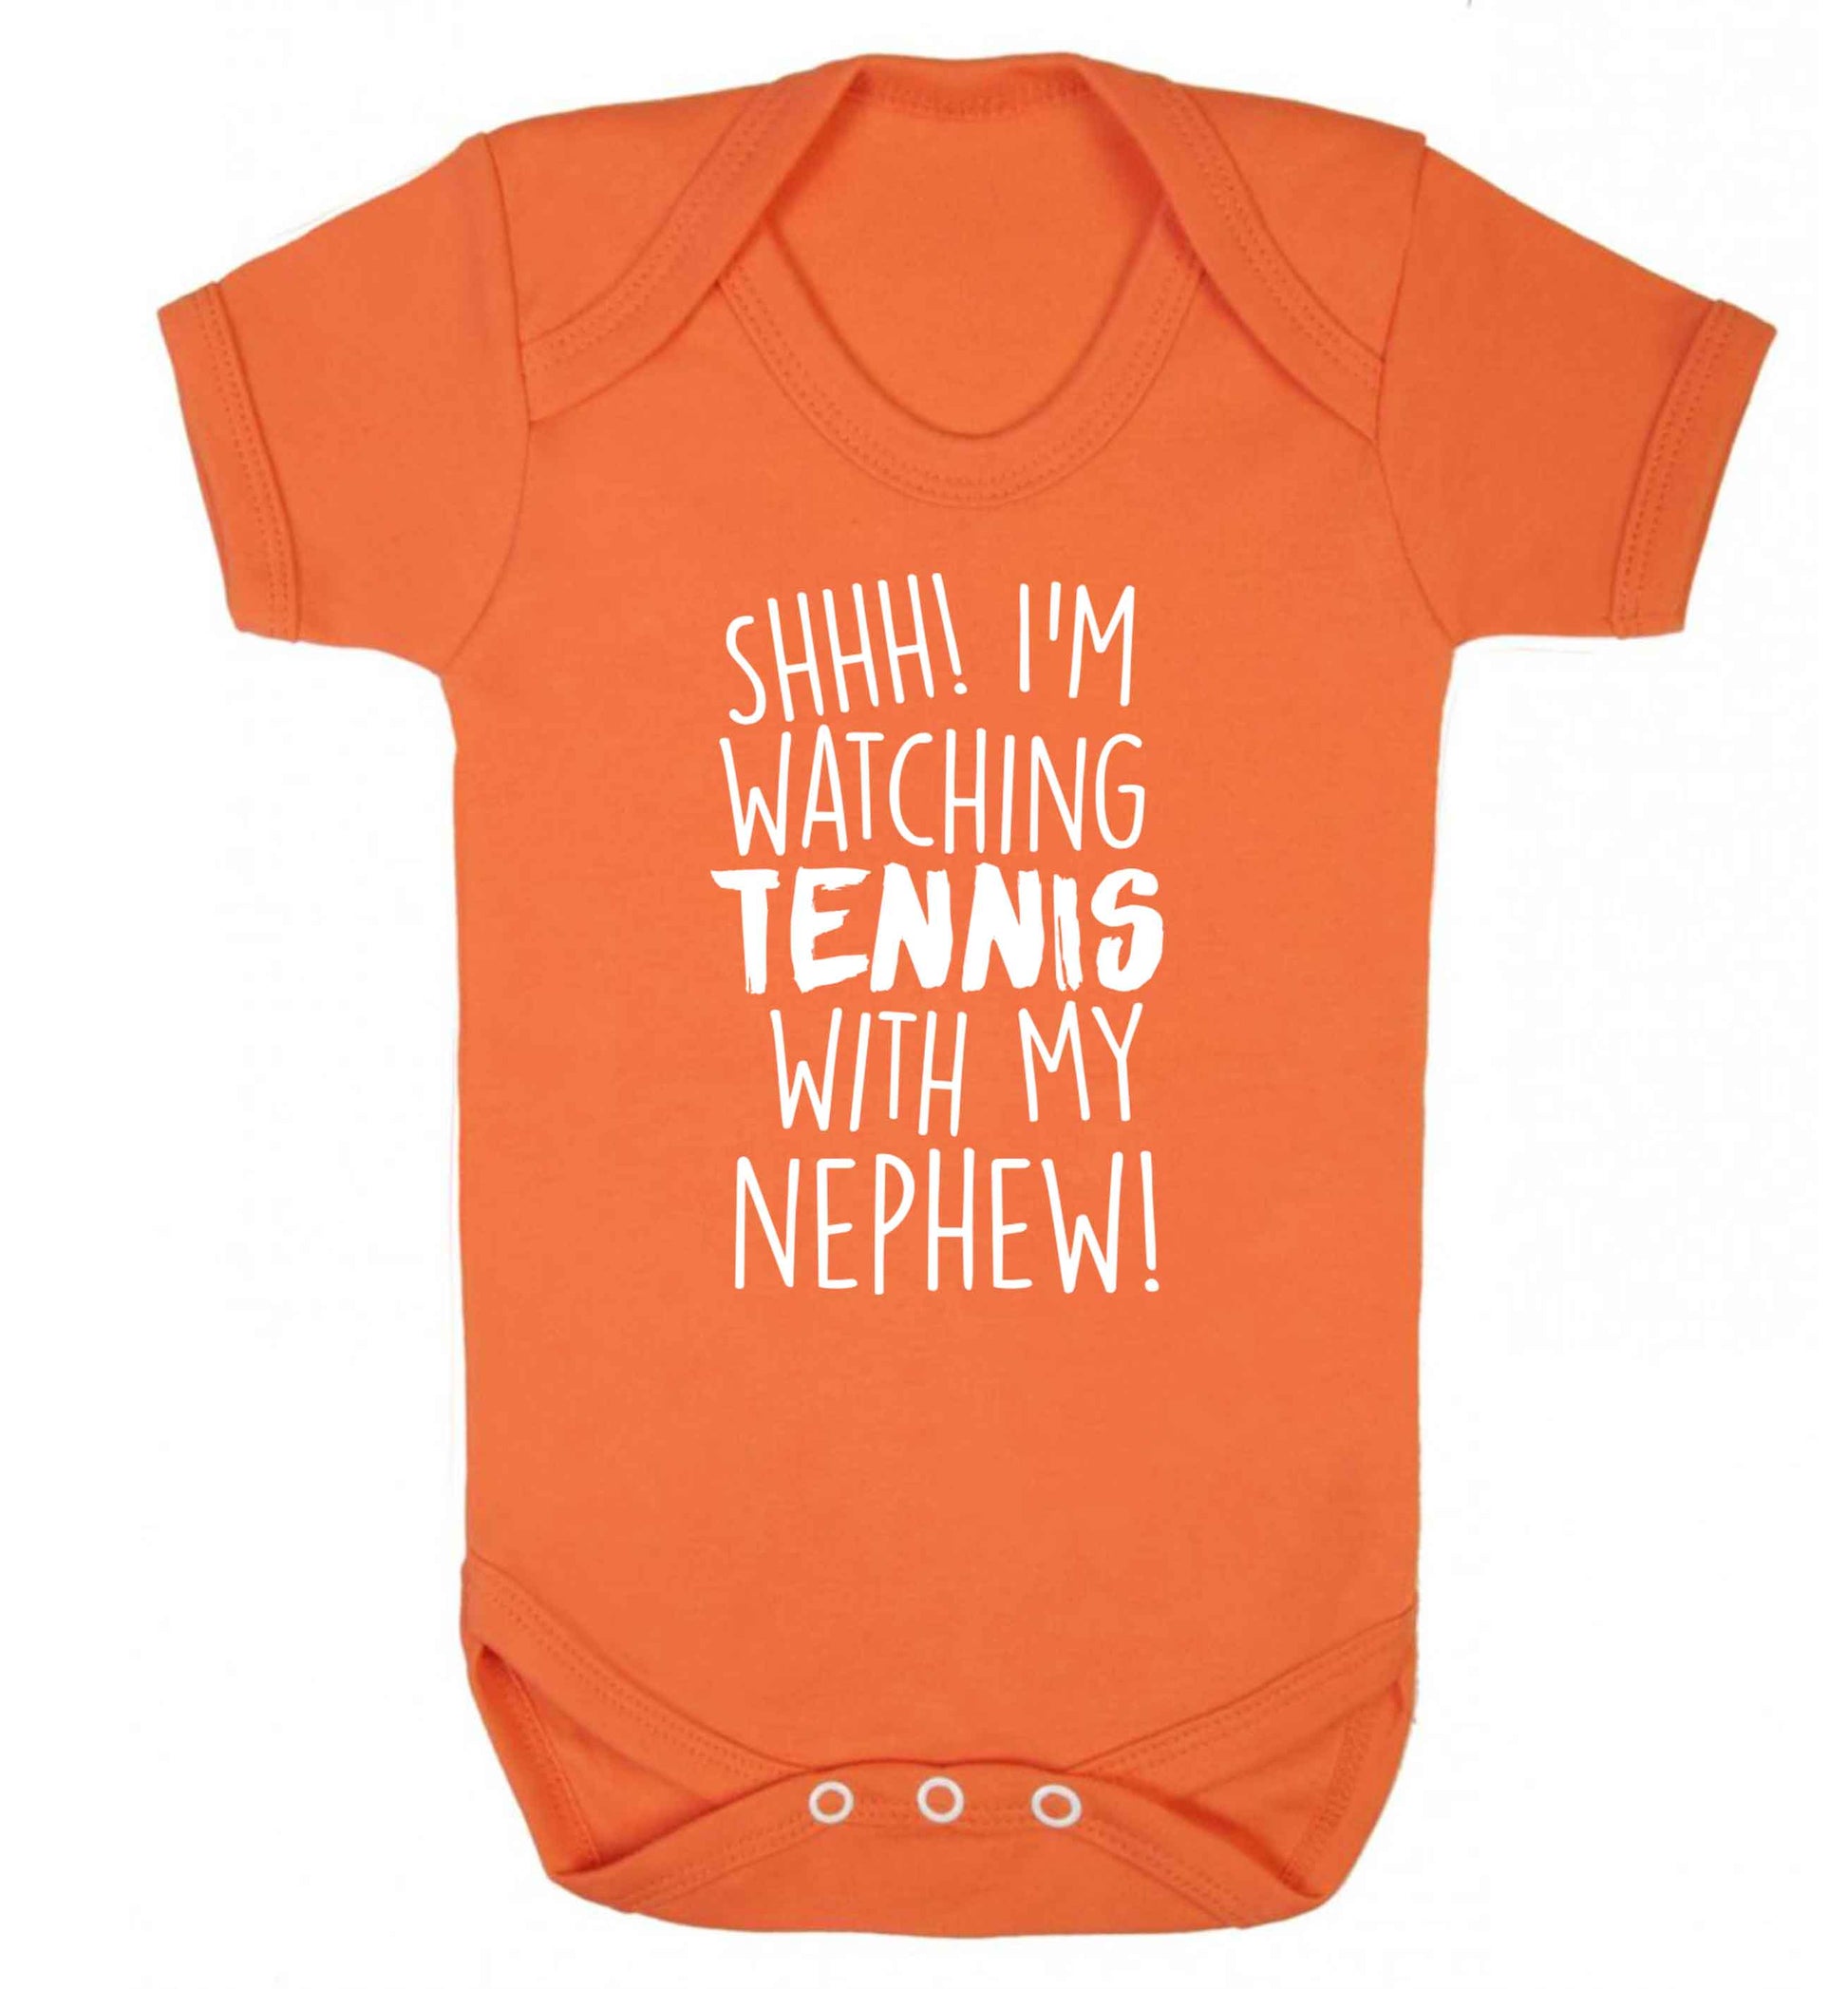 Shh! I'm watching tennis with my nephew! Baby Vest orange 18-24 months